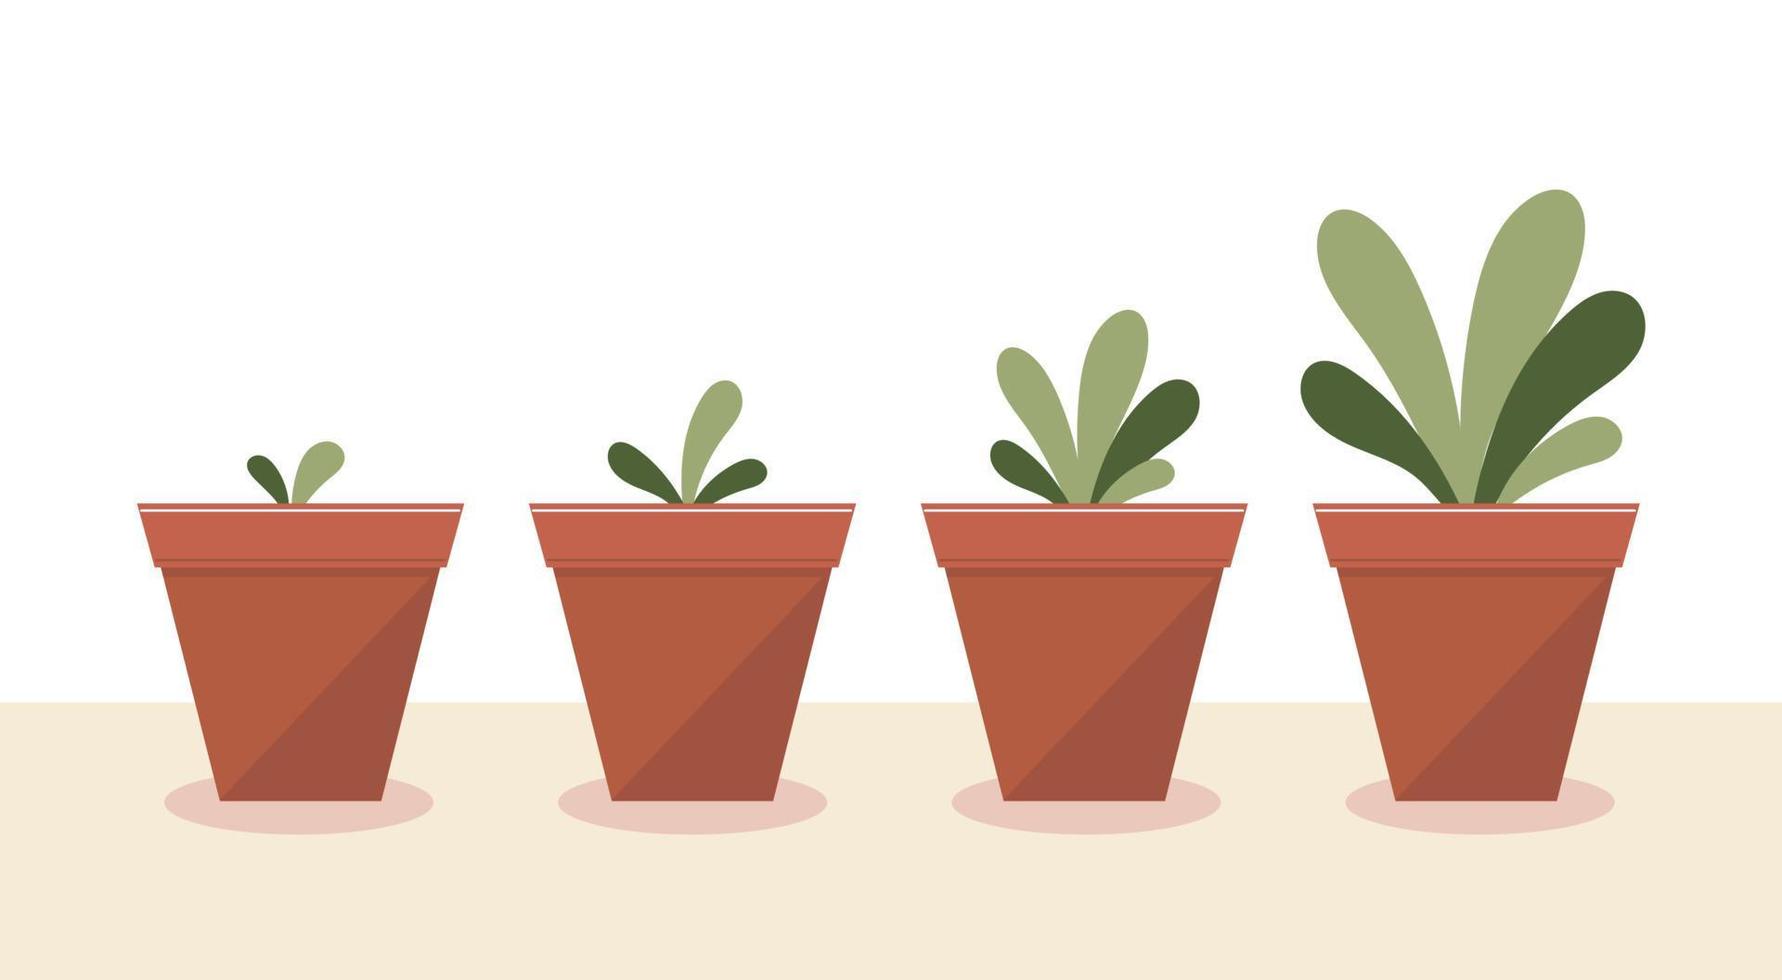 de groei van de plants.stages of growth and development.care, drenken, kunstmest, boom, flower.flat vector stock illustratie